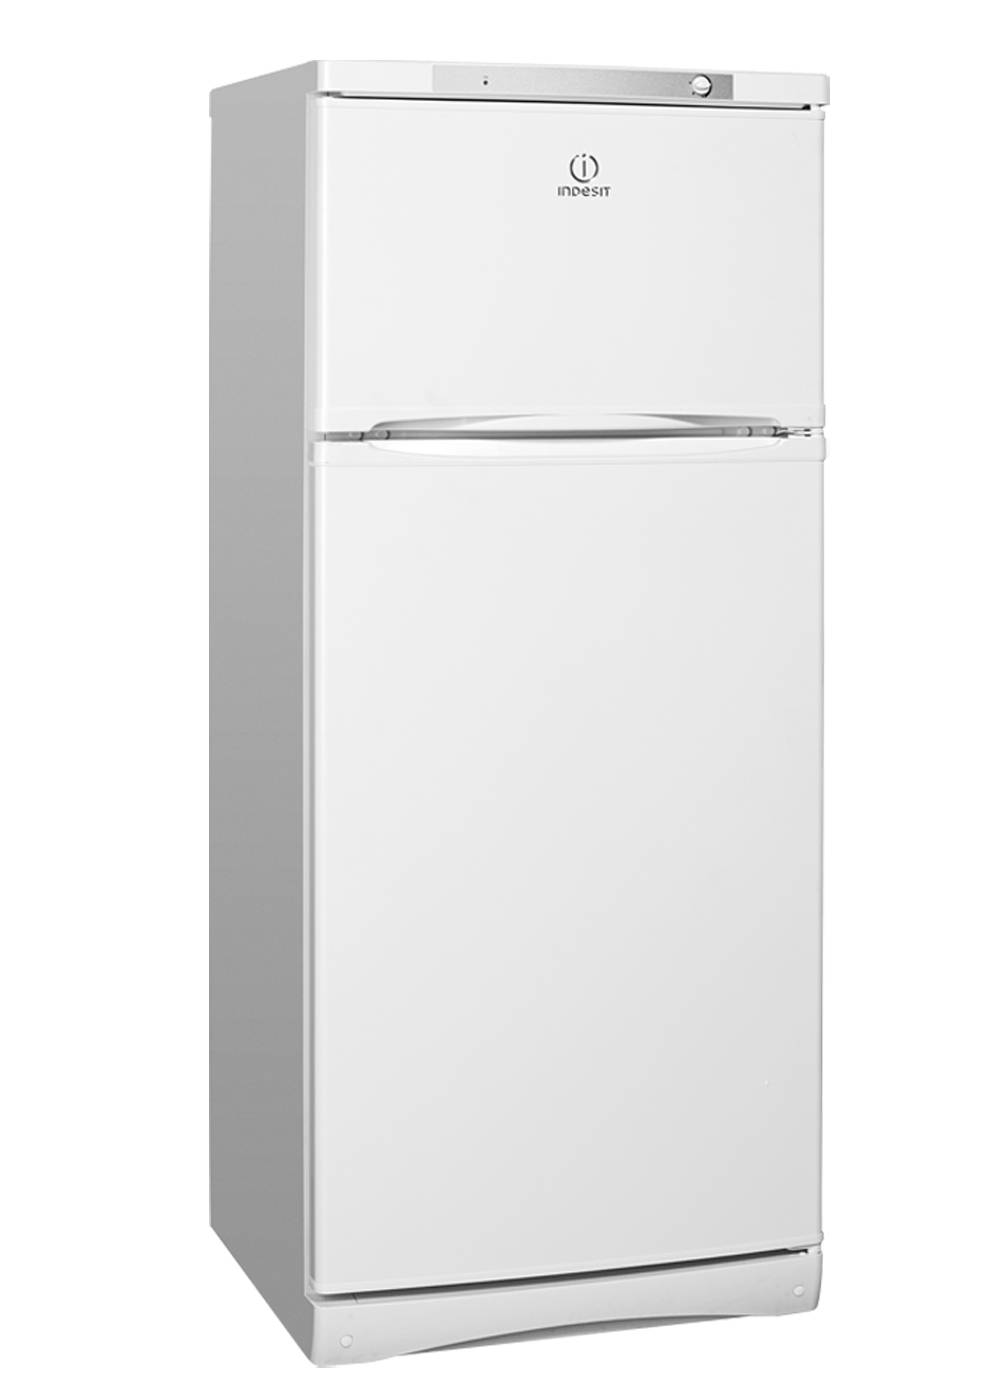 Эльдорадо купить холодильник недорогой. Холодильник Индезит двухкамерный St 14510. Холодильник Индезит двухкамерный St 145.